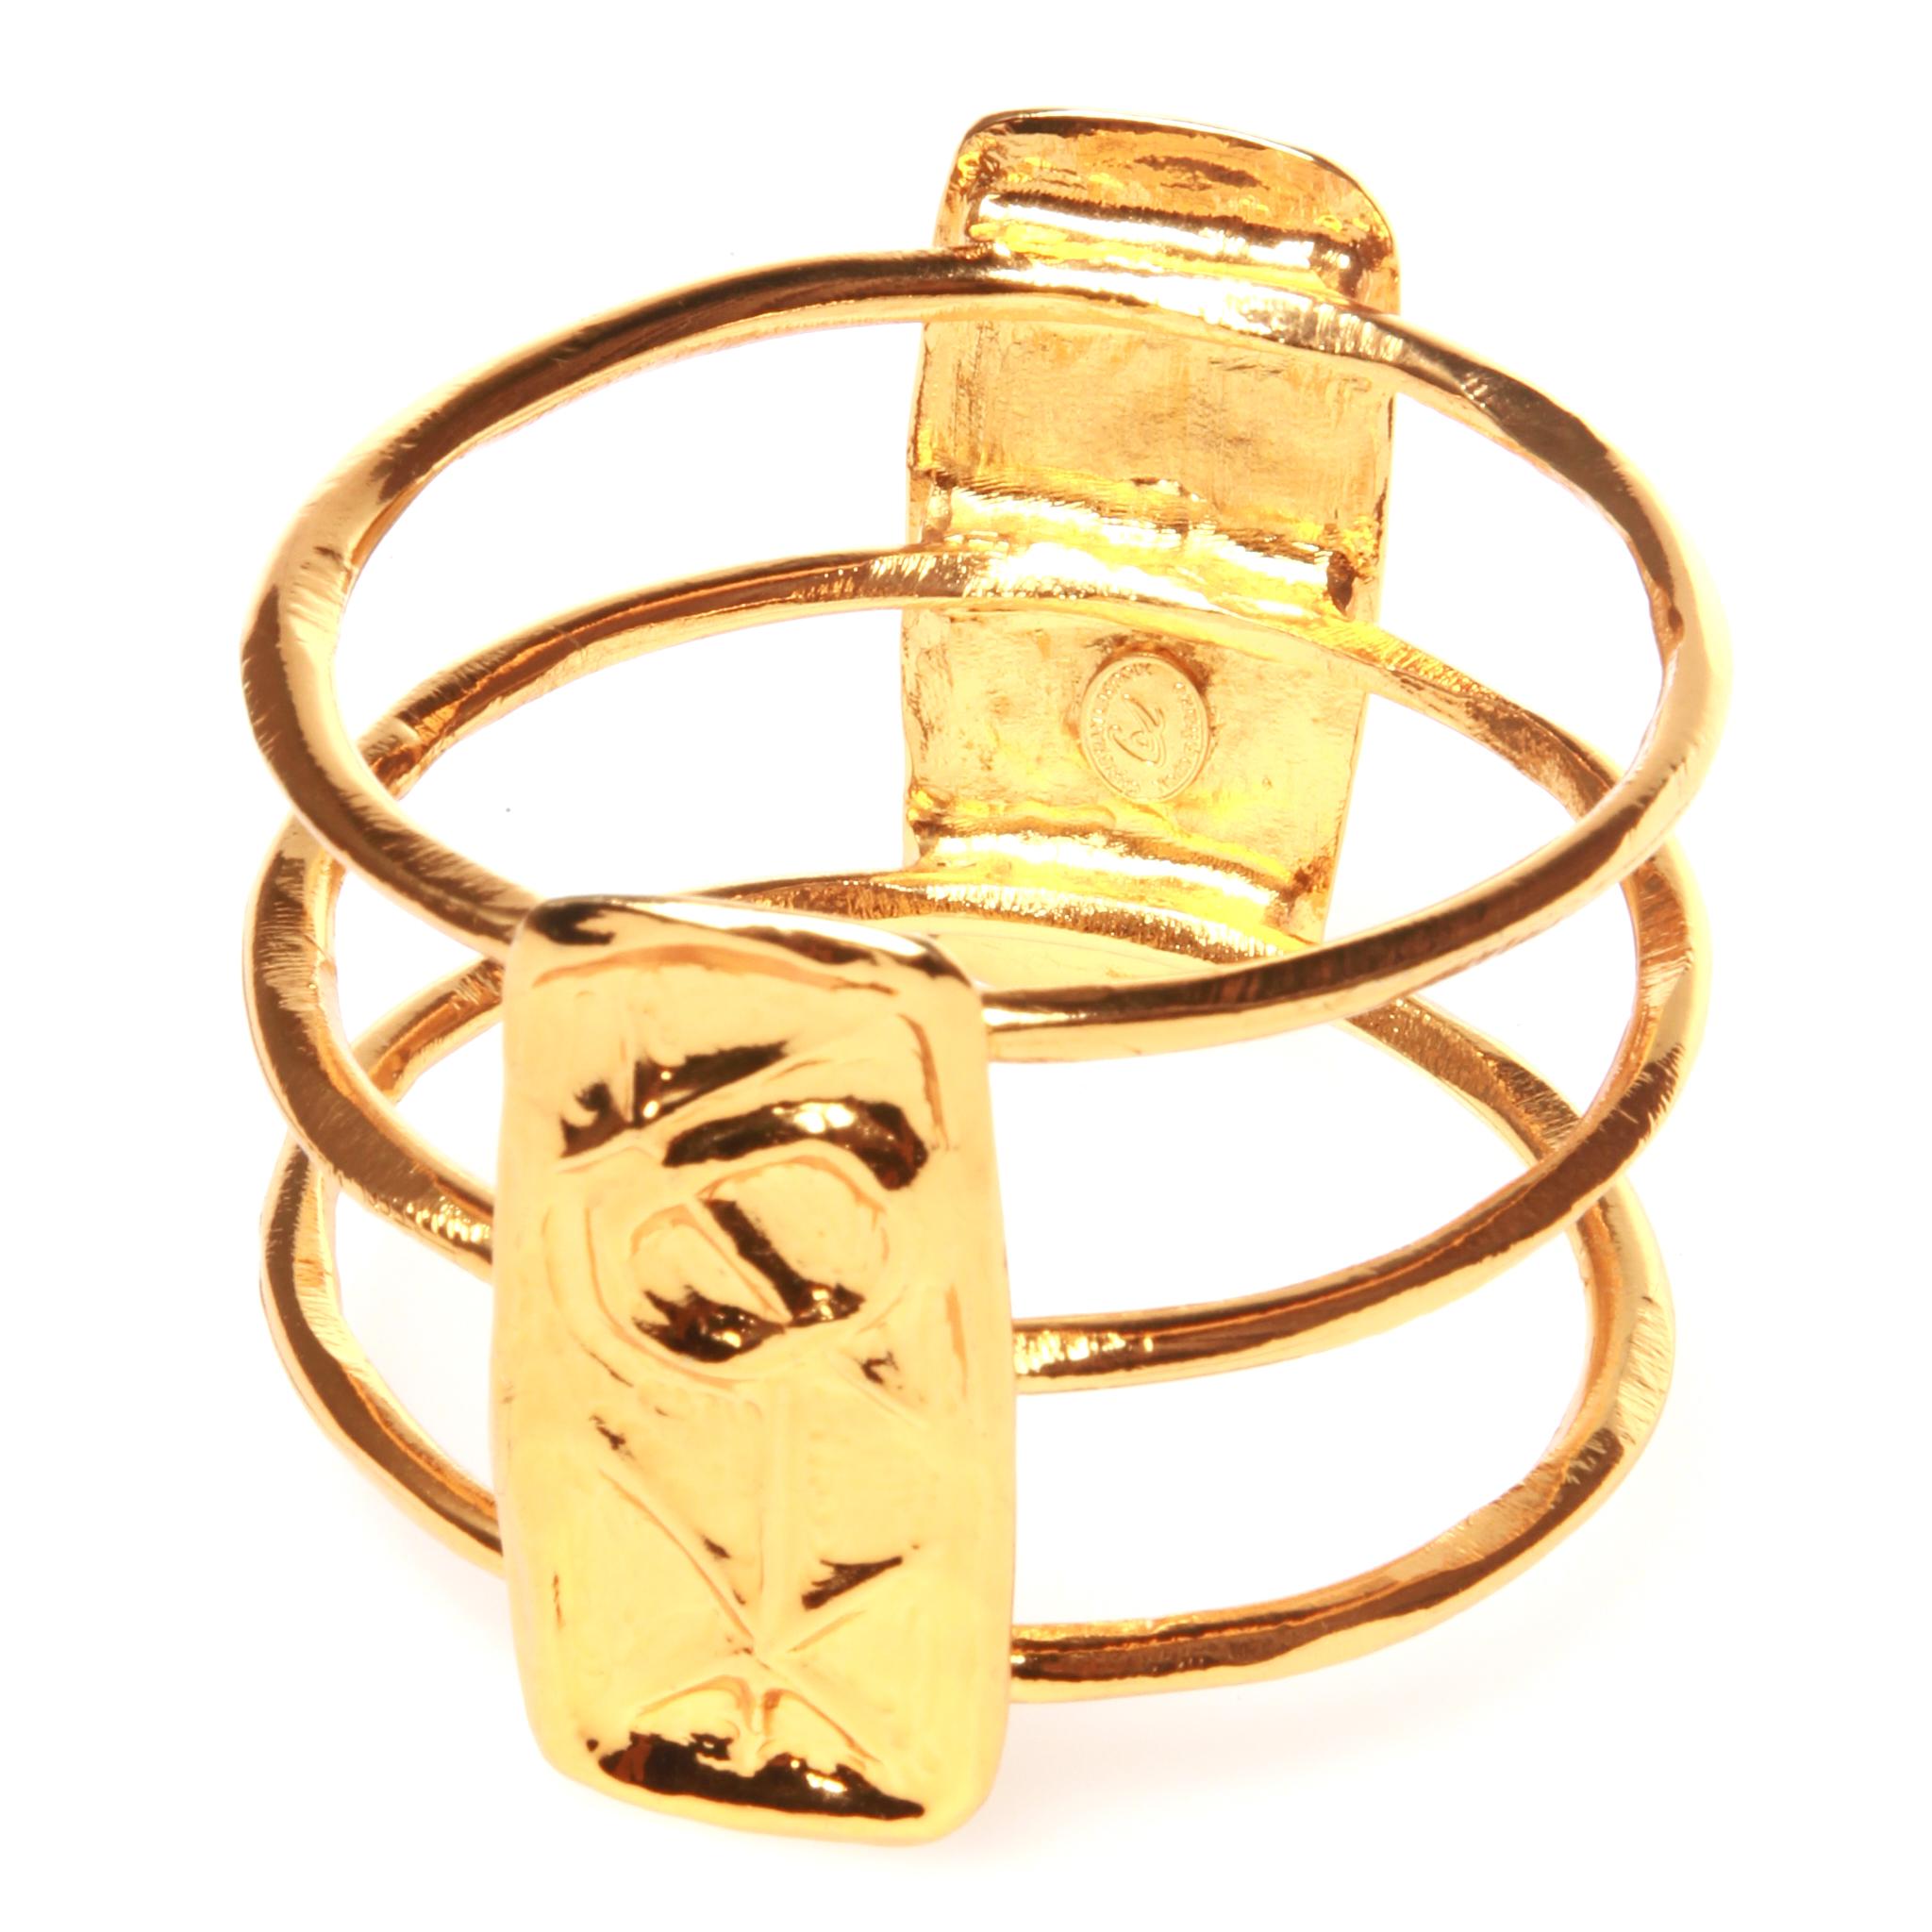 Christian Lacroix gold bracelet with authentic box 